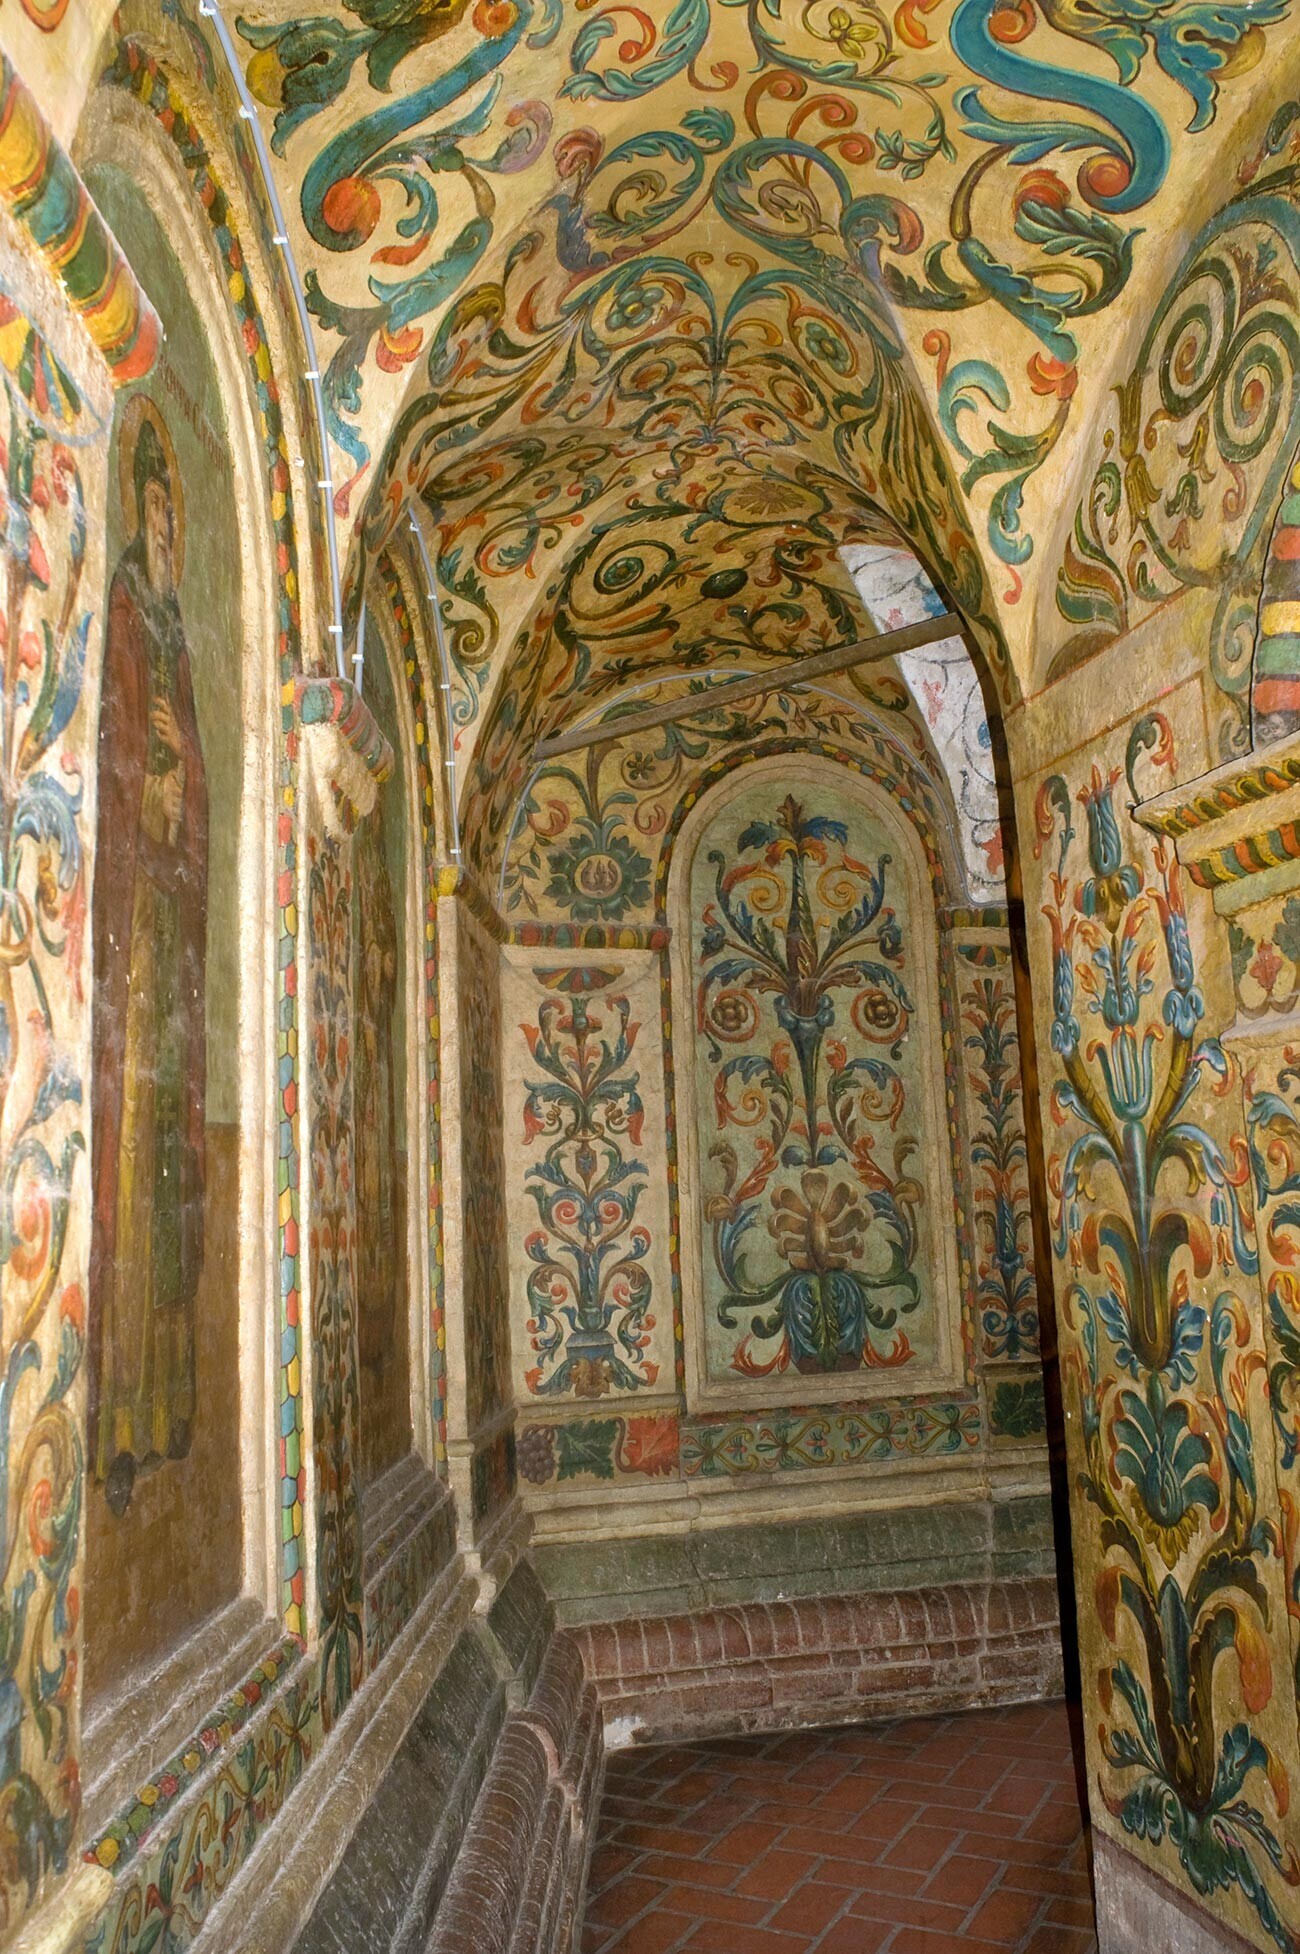 Katedrala Vasilija Blaženega, notranjost. Severni galerijski prehod s stenskimi poslikavami iz 19. stoletja. Levo: slika sv. Nikite Stolpnika. 2. junij 2012
